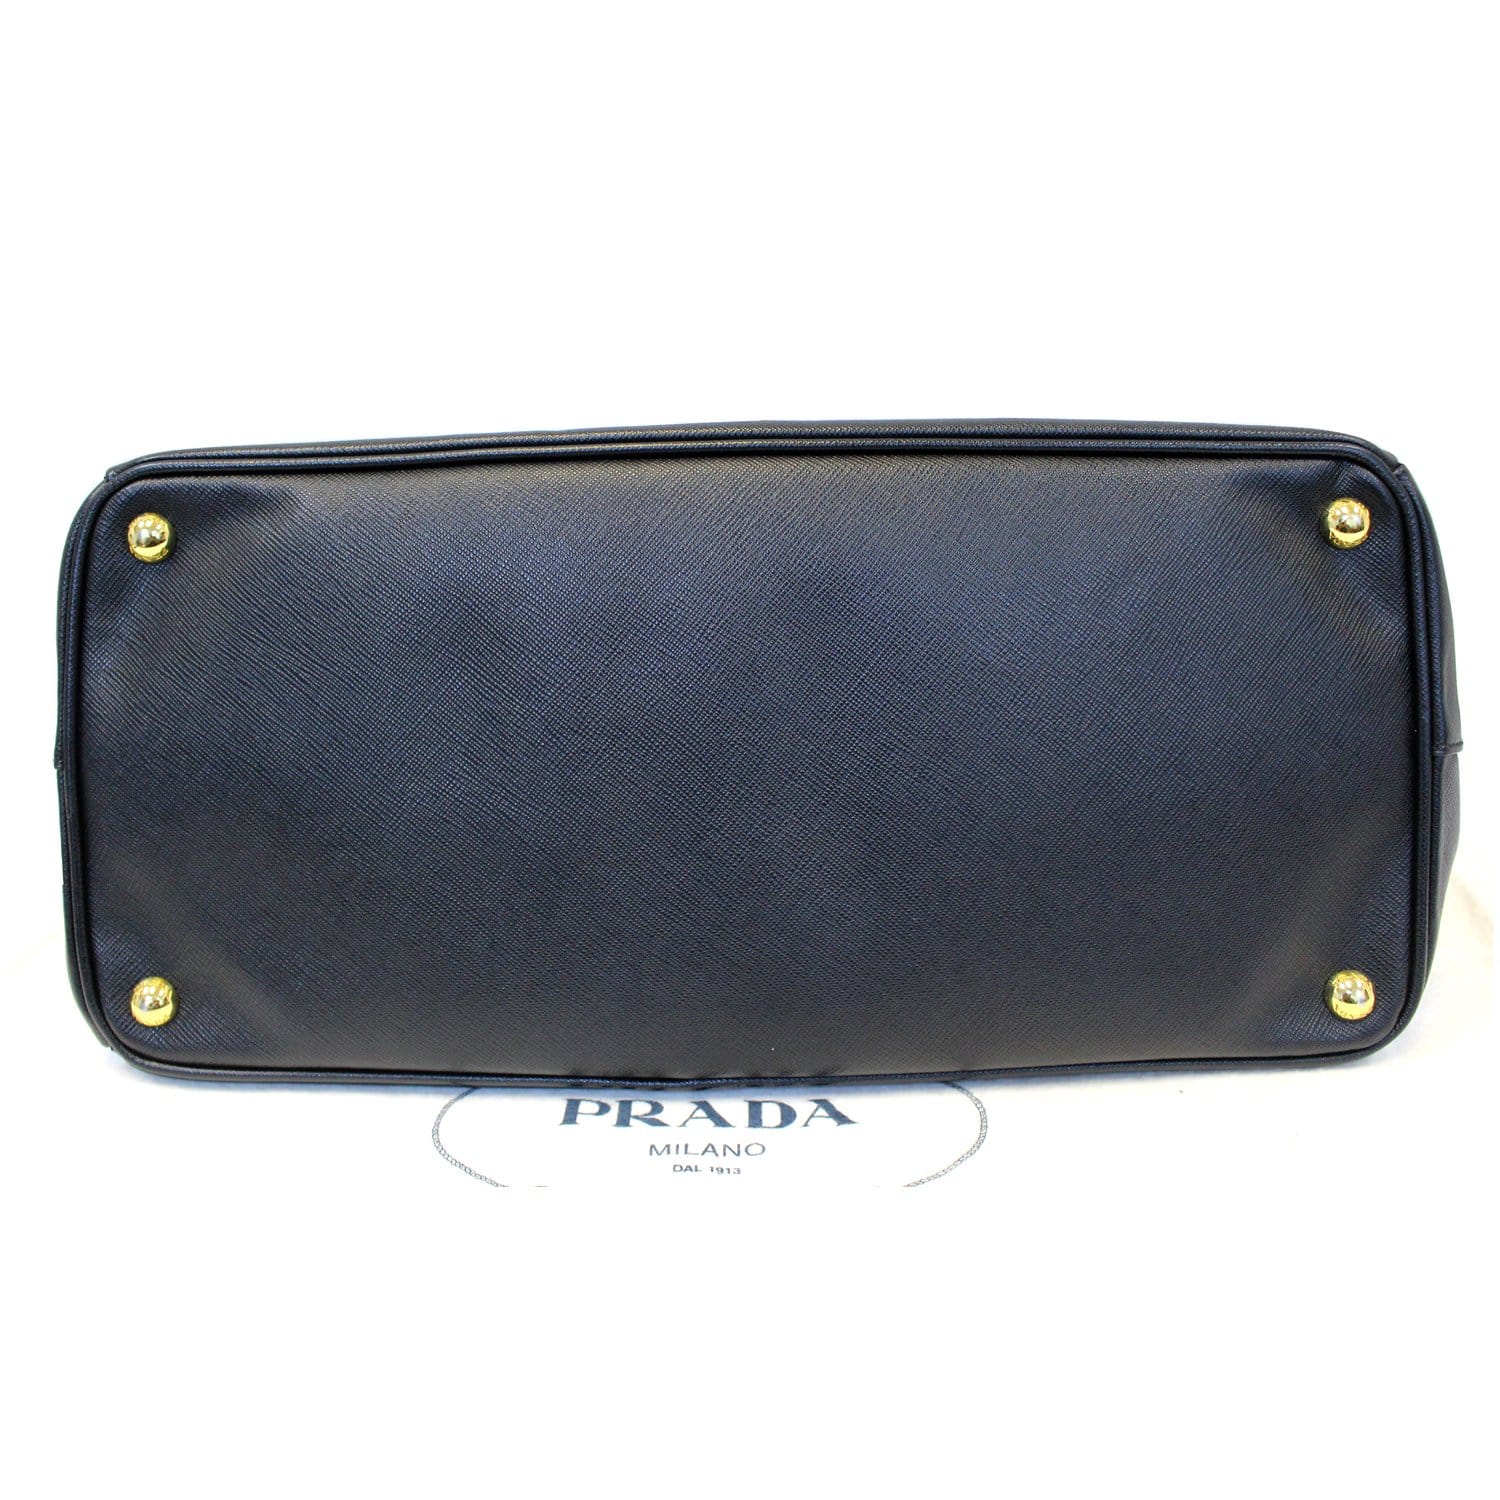 Galleria Medium Leather Bag in Black - Prada